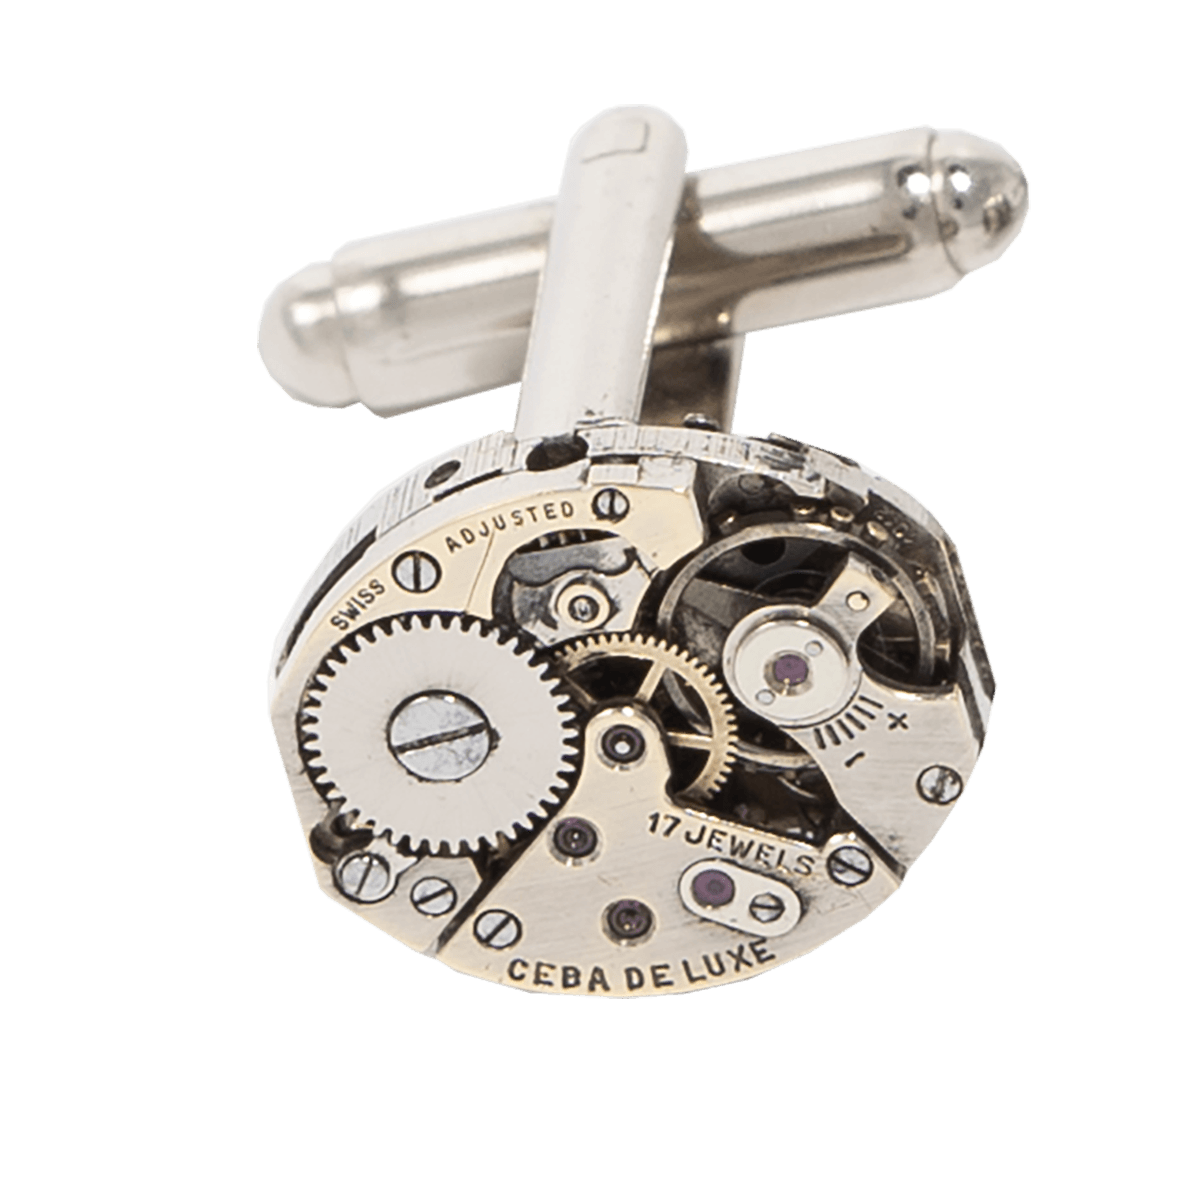 Gemelli realizzati con meccanismi di orologi d'epoca prezzi bassi